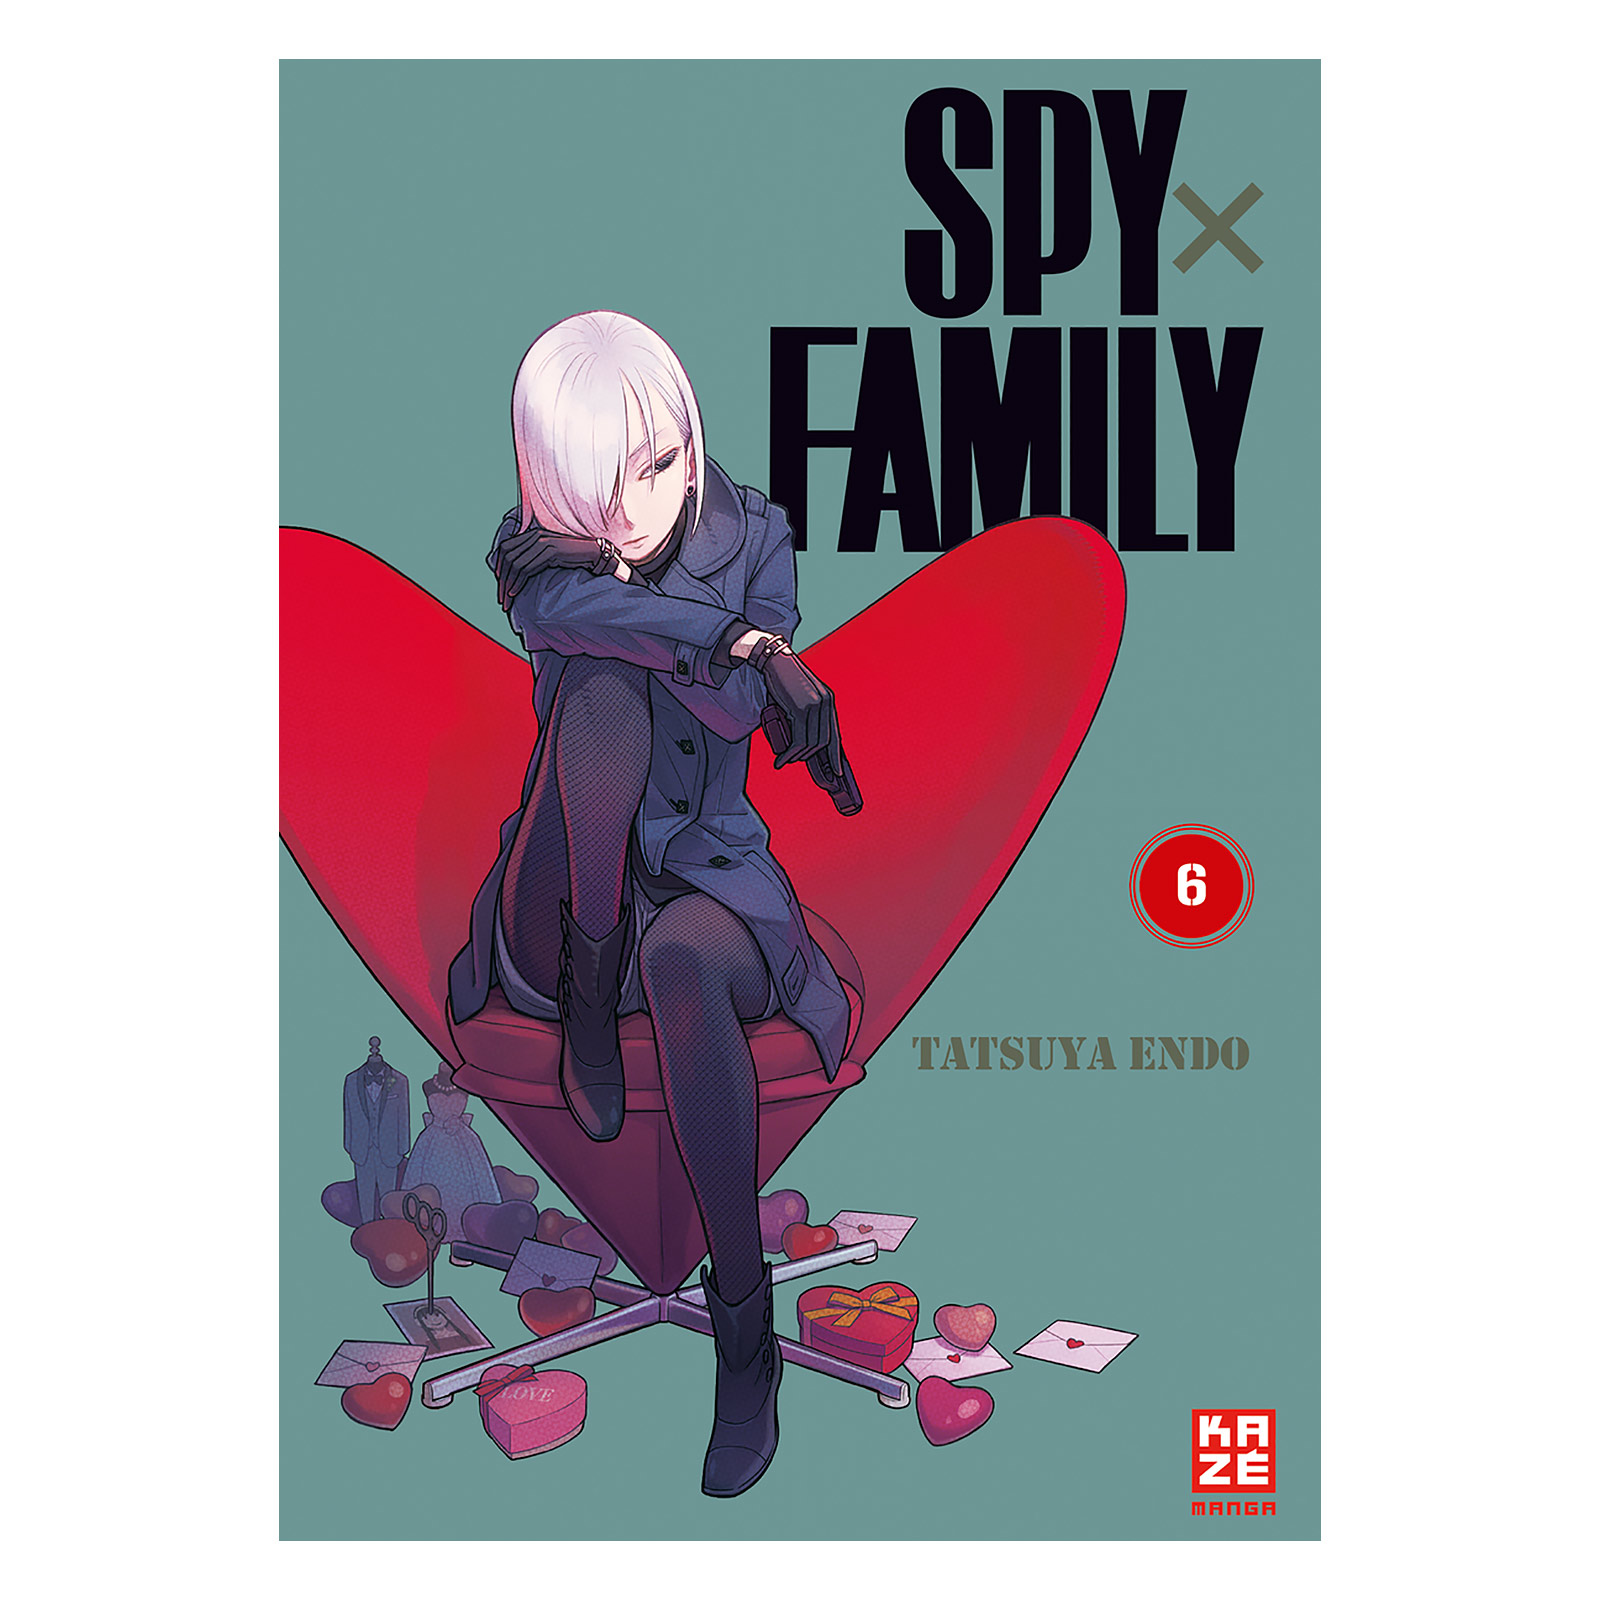 Spy x Family - Volume 6 Paperback